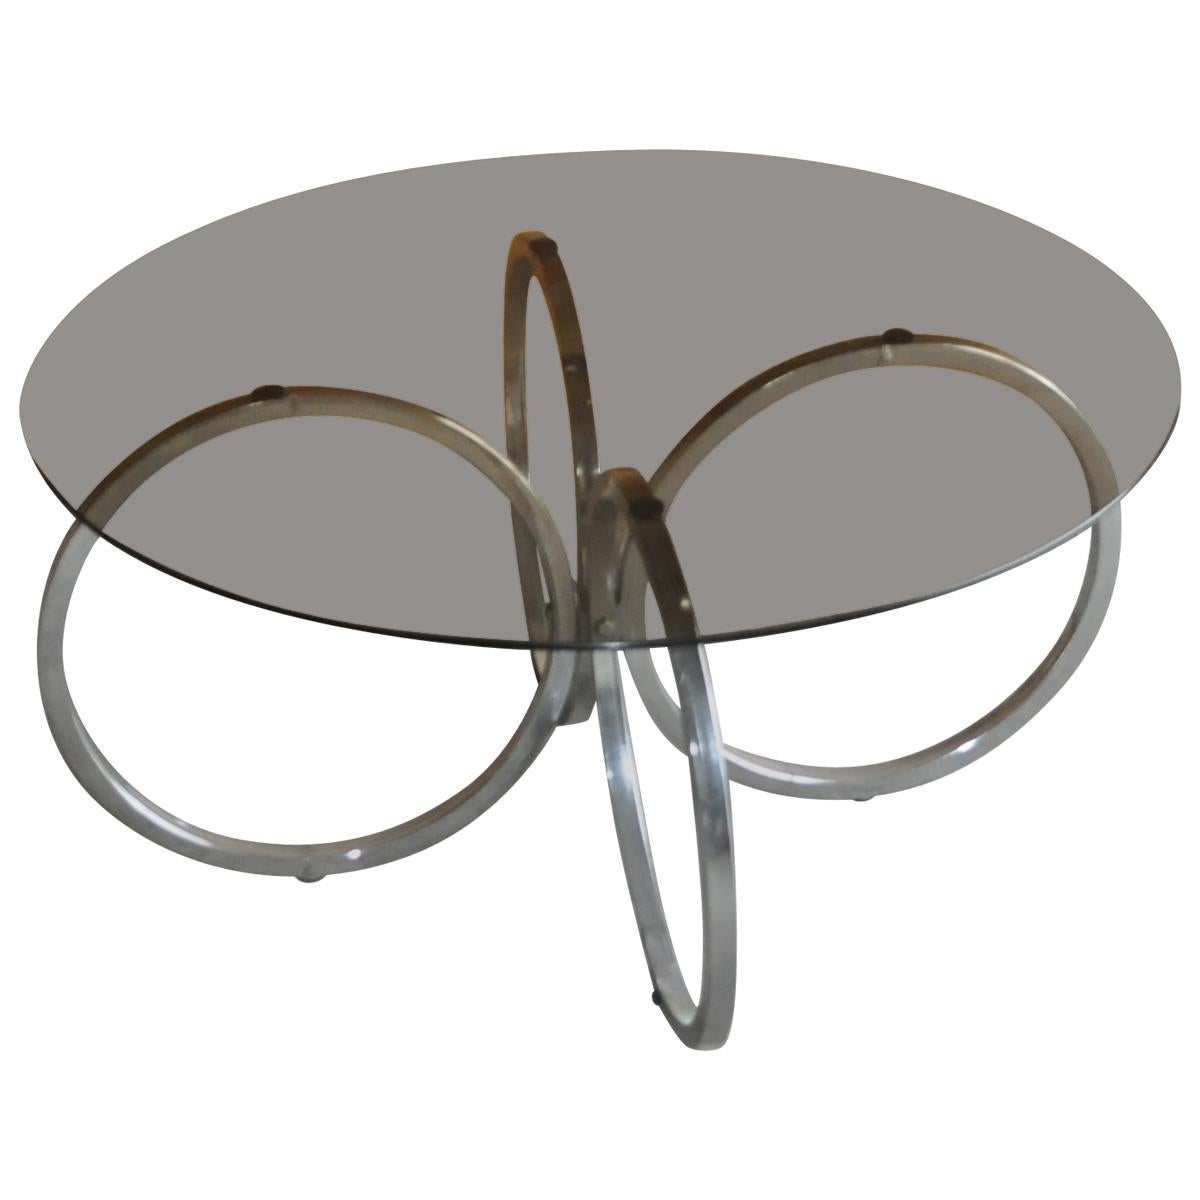 Midcentury 1960s Retro Tubular Chrome Smokey Glass Round Coffee Table For Sale